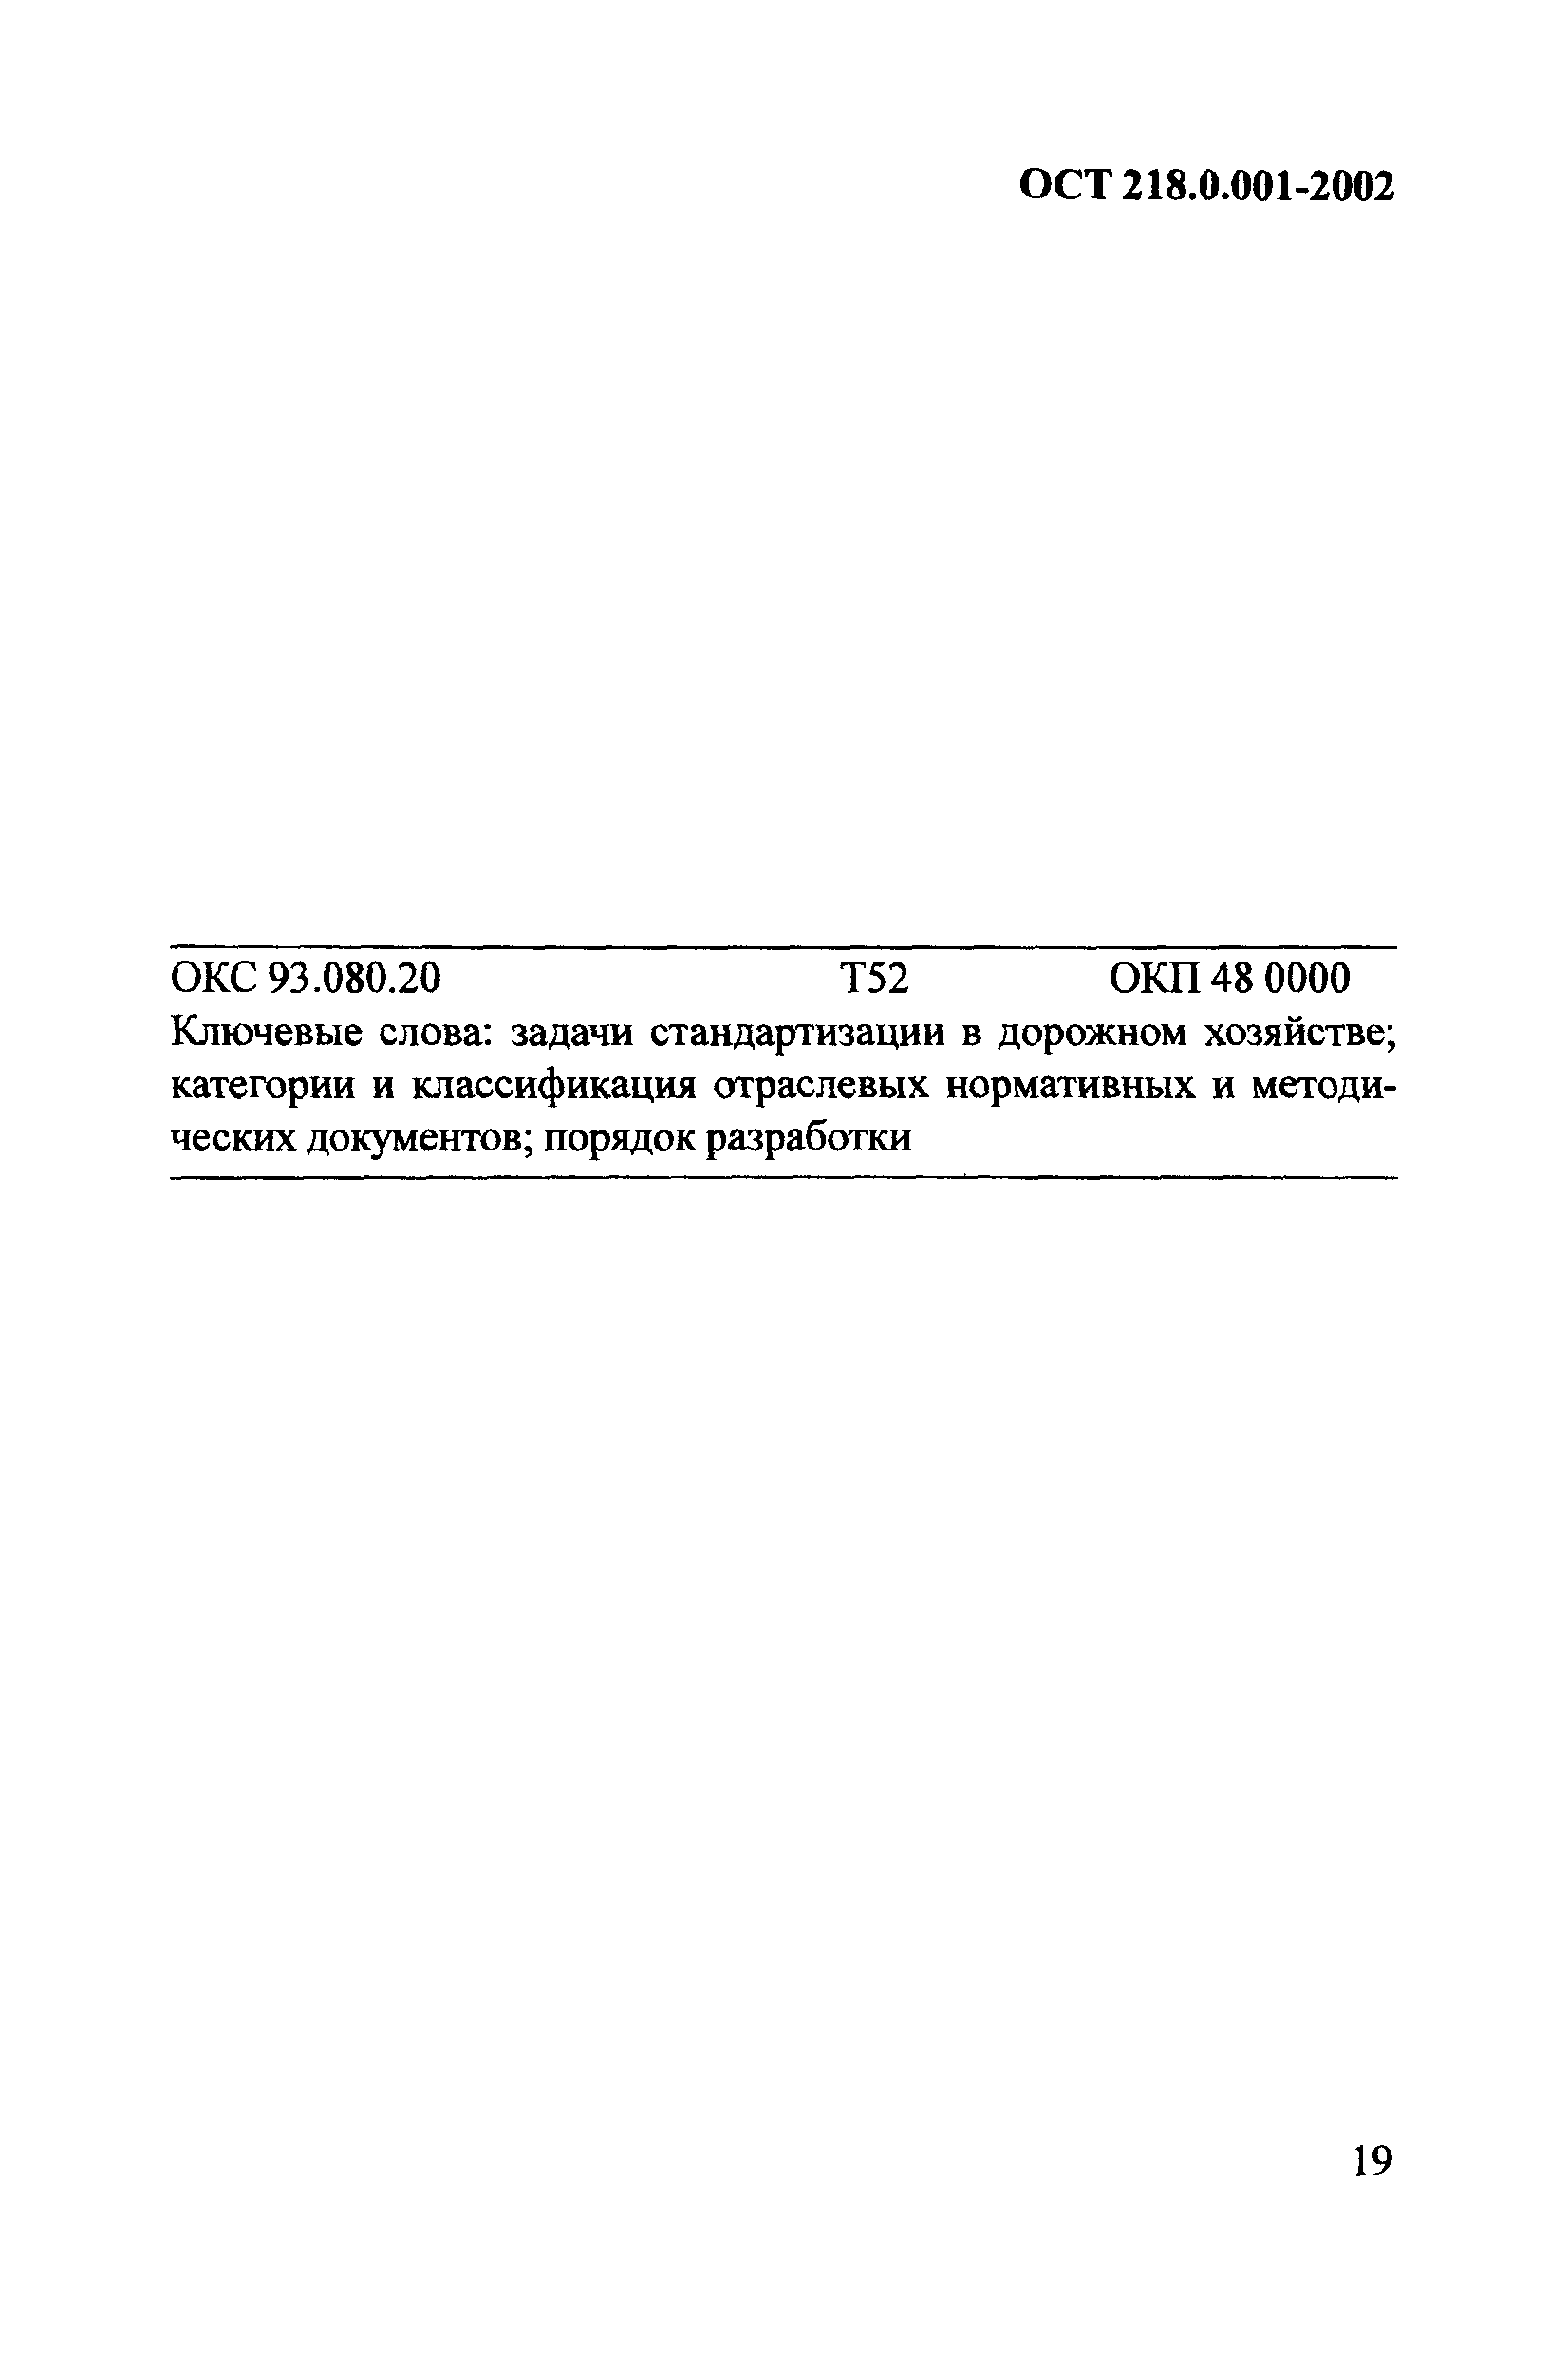 ОСТ 218.0.001-2002